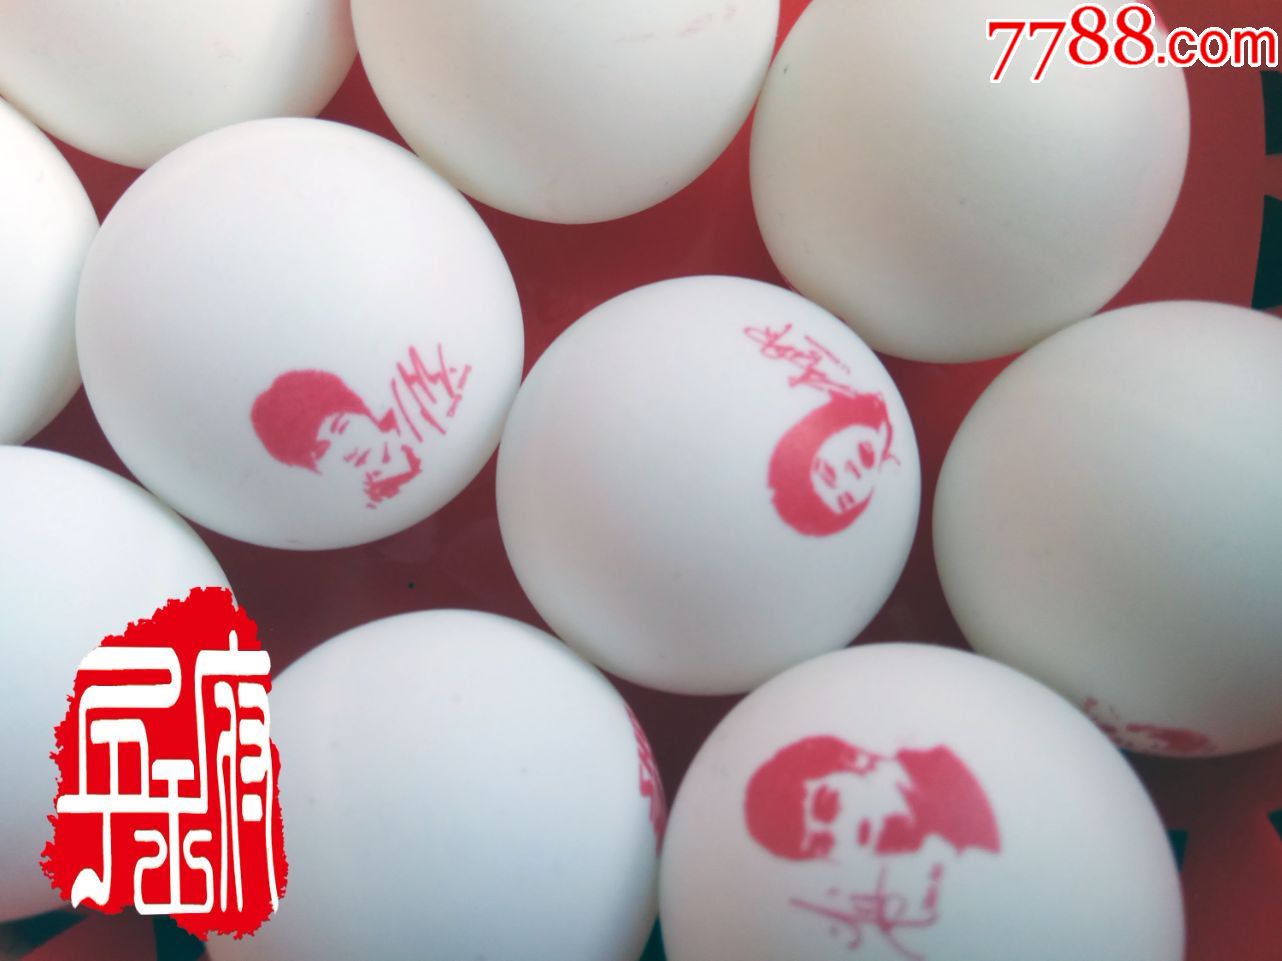 马龙丁宁签名乒乓球苏州世乒赛限量纪念版肖像